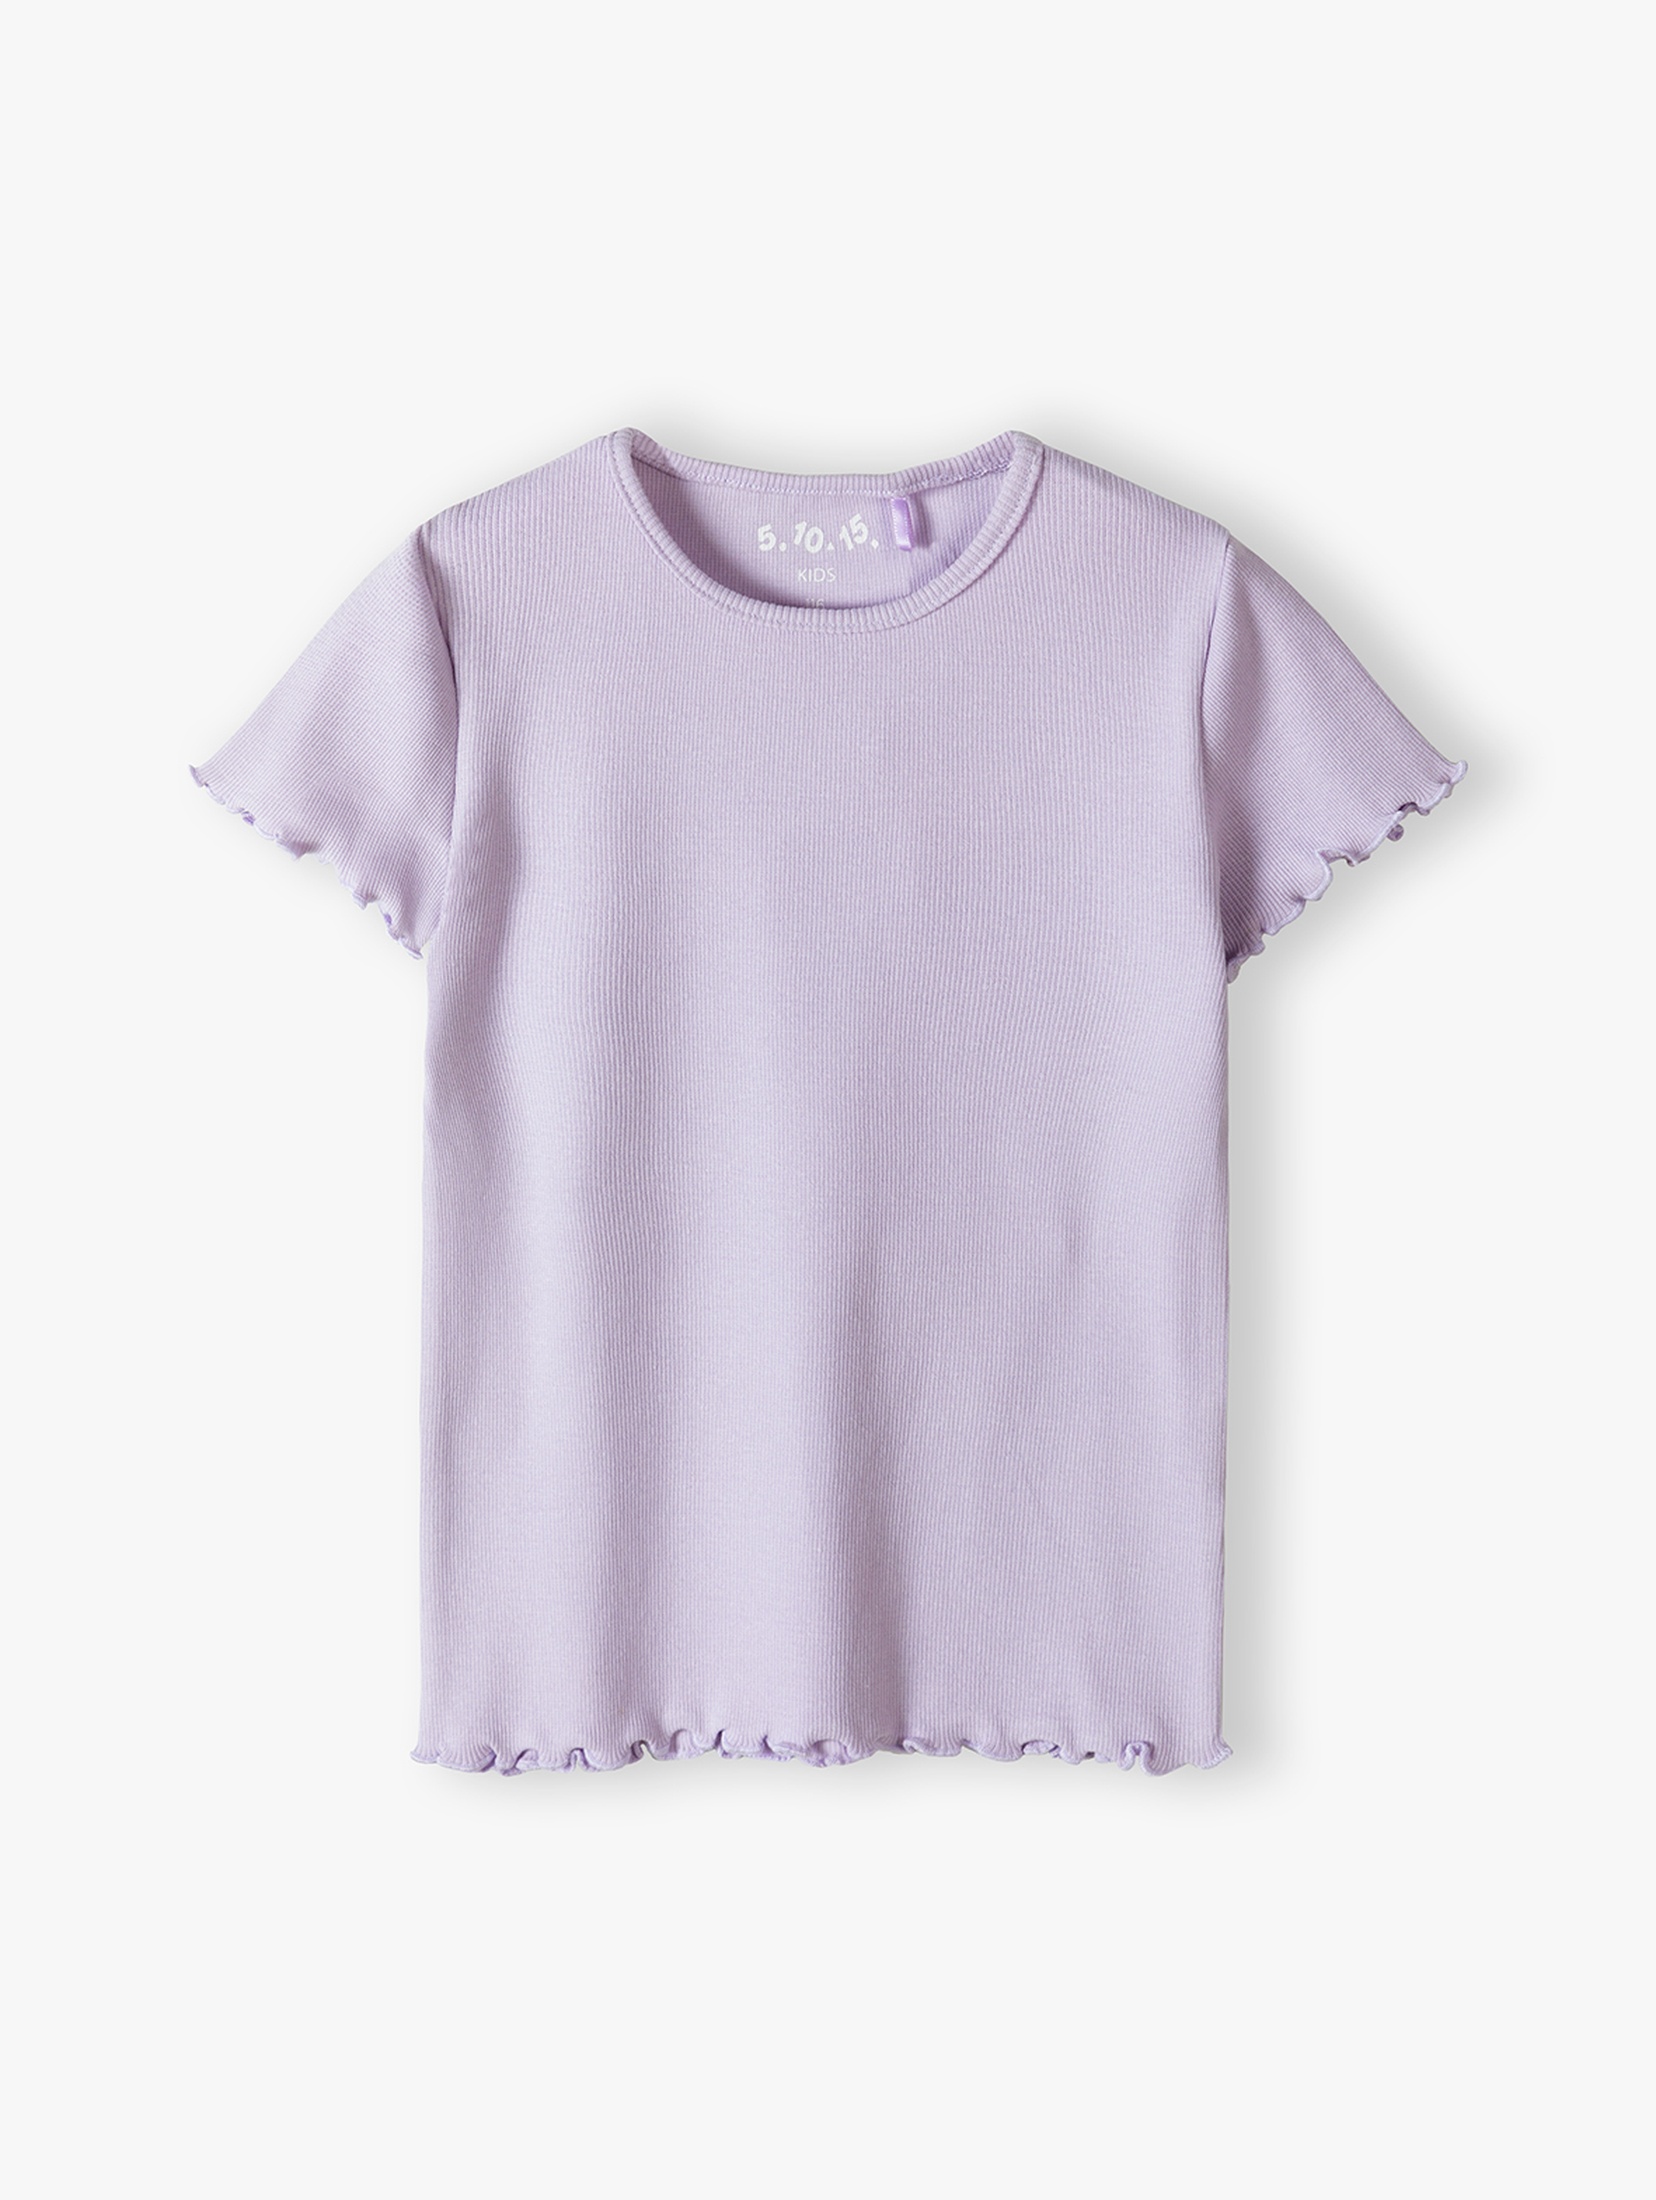 Fioletowy t-shirt w prążki - 5.10.15.